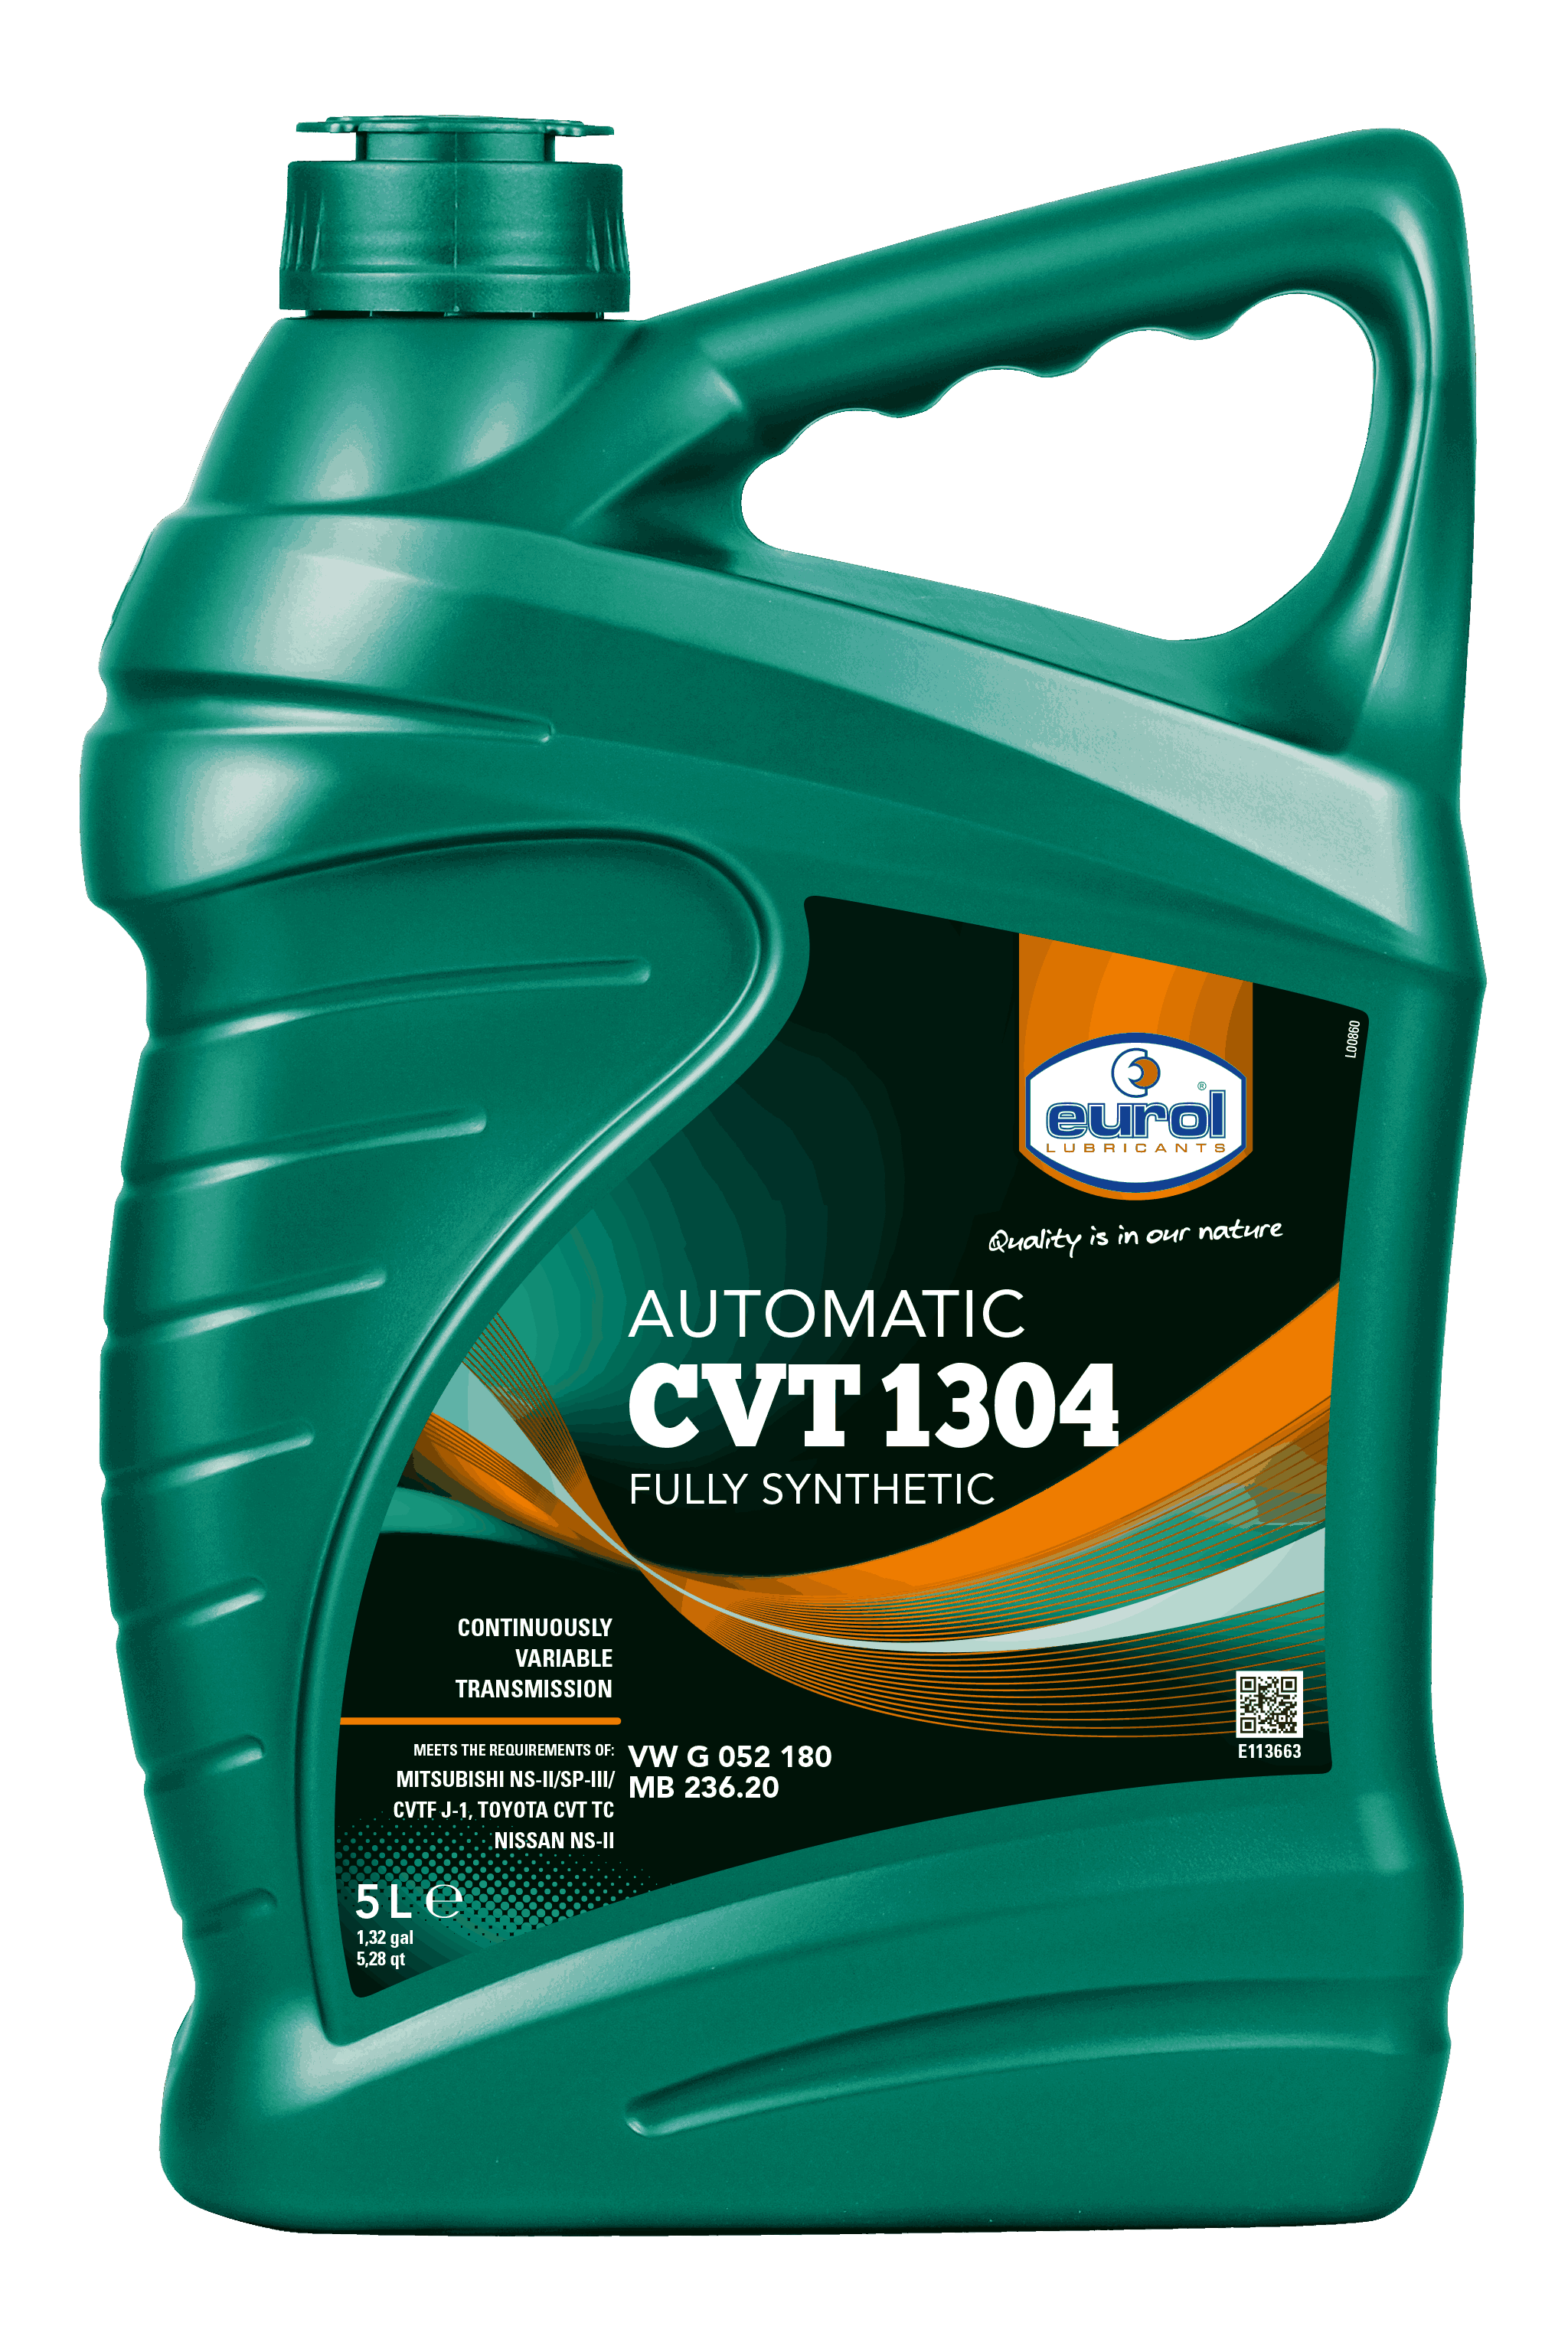 CVT 1304